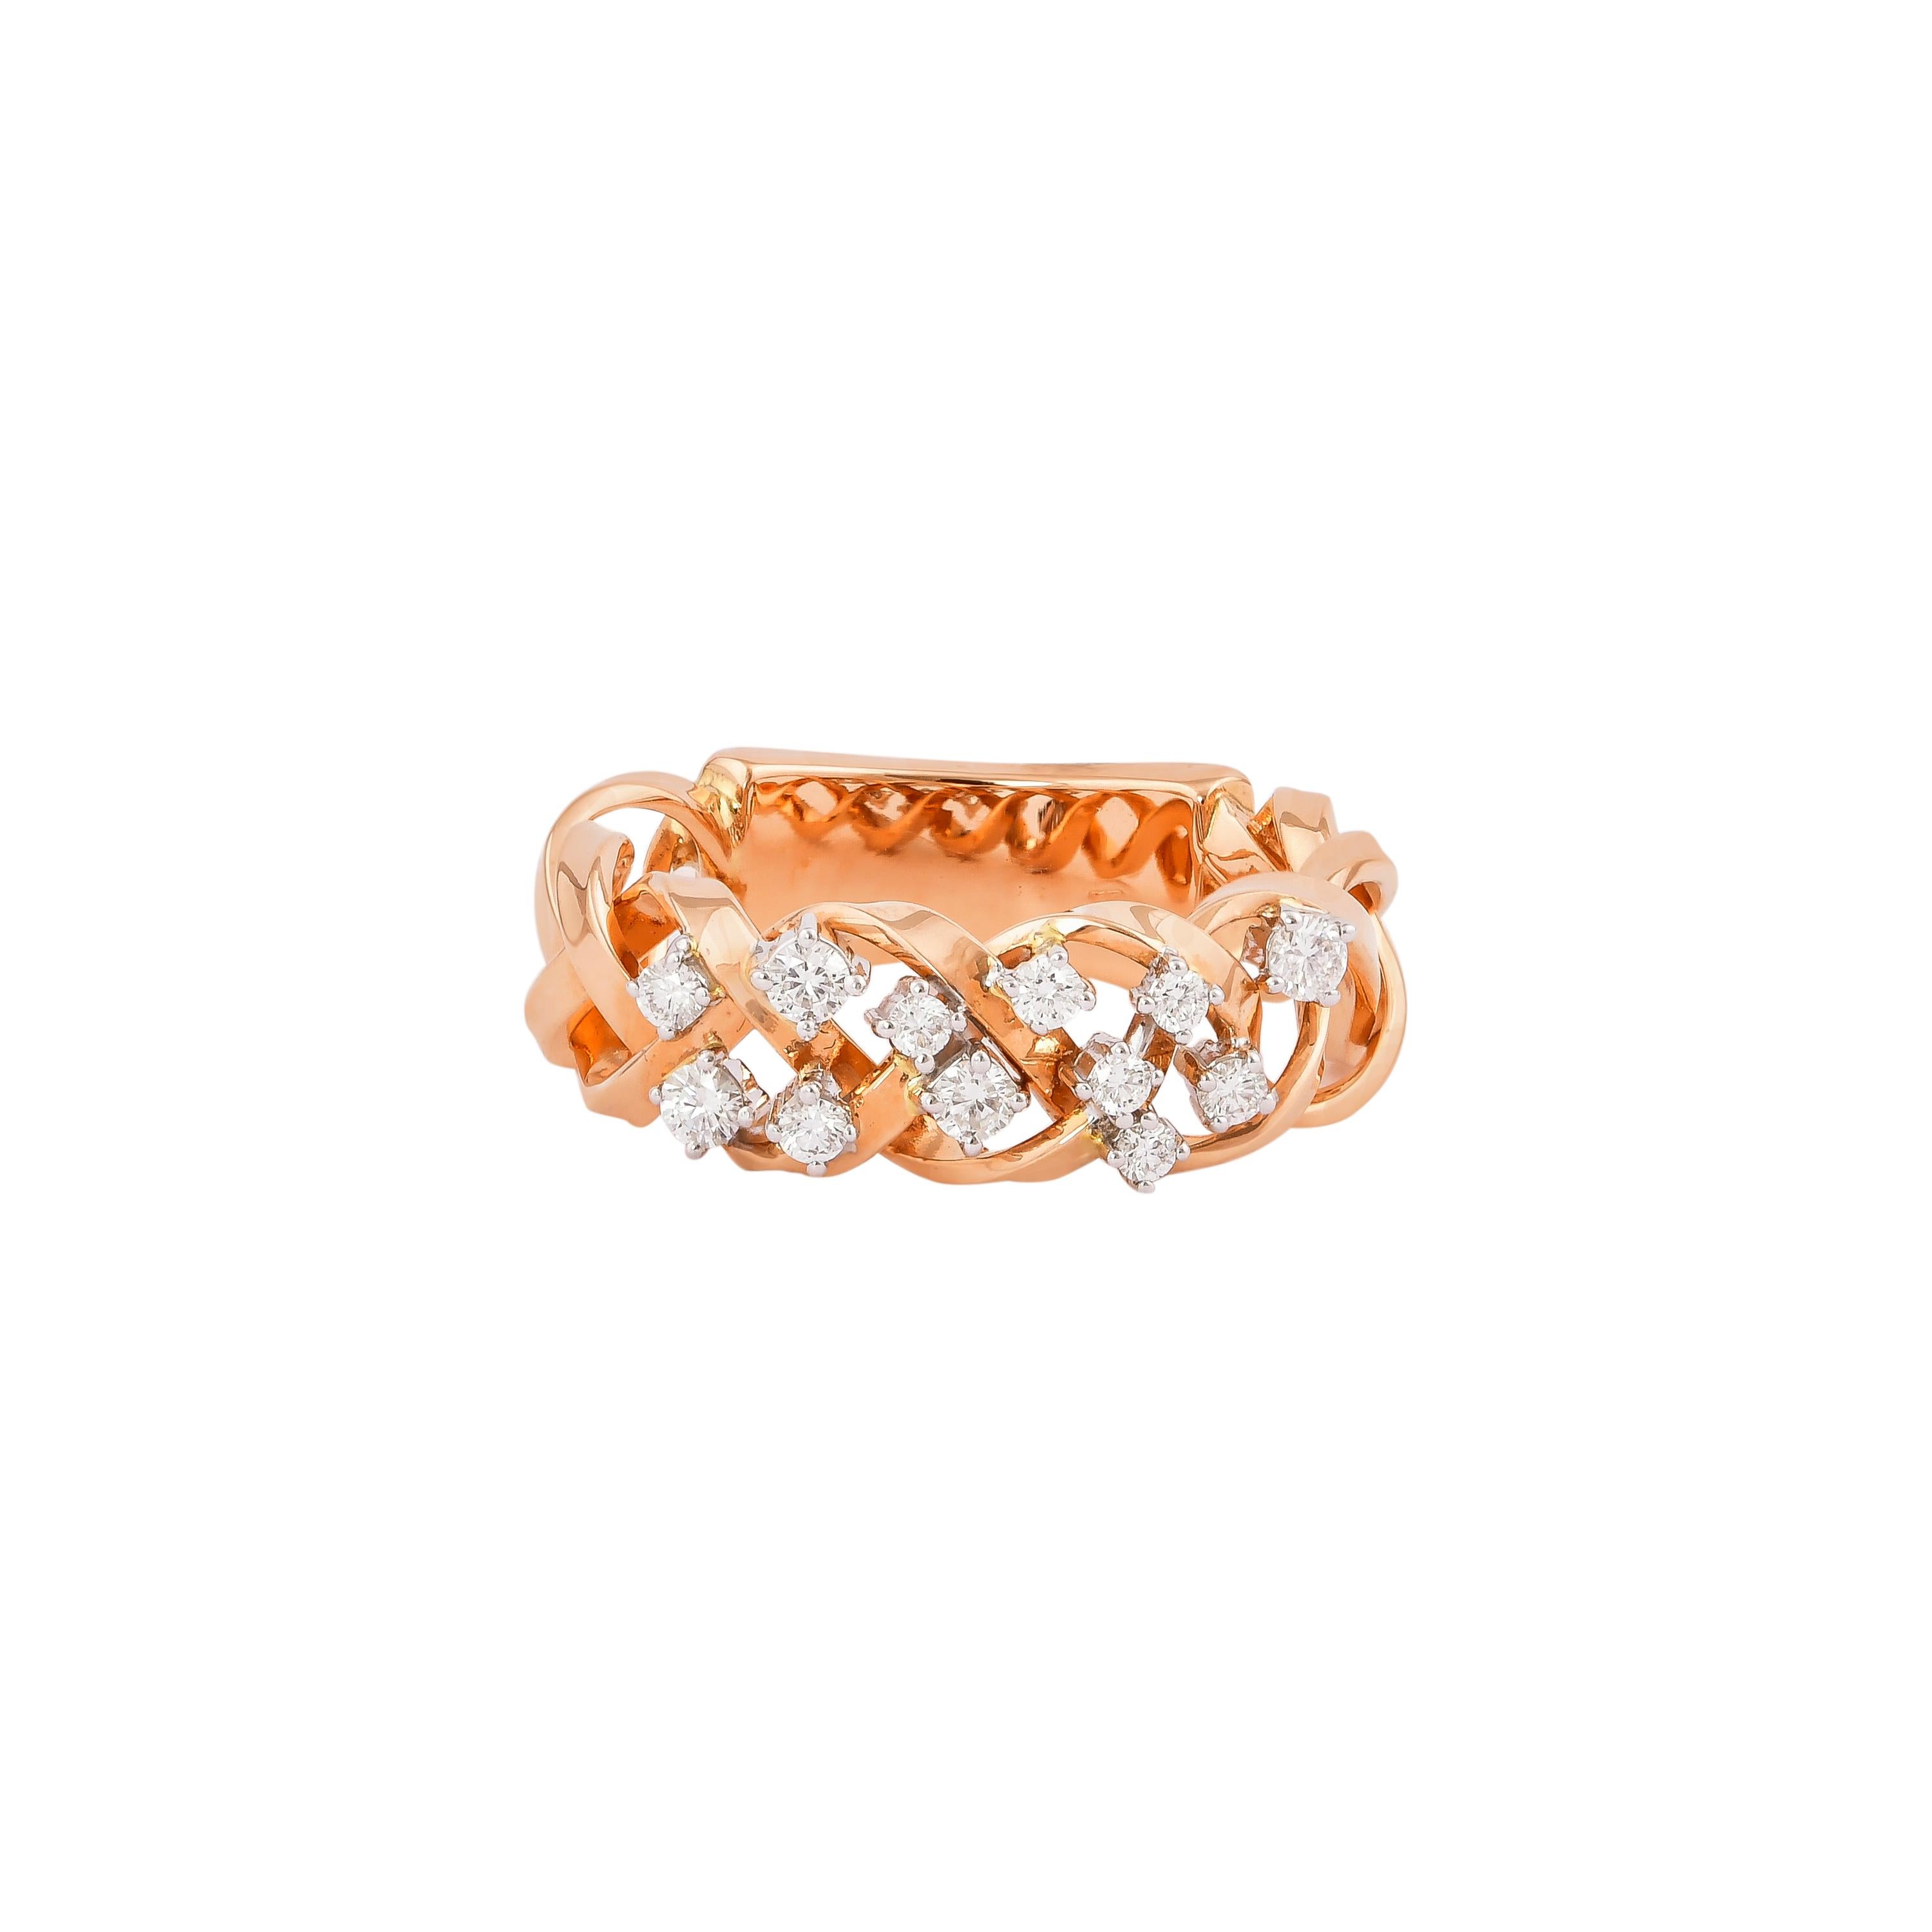 0.354 Carat Diamond Ring in 18 Karat White & Rose Gold For Sale